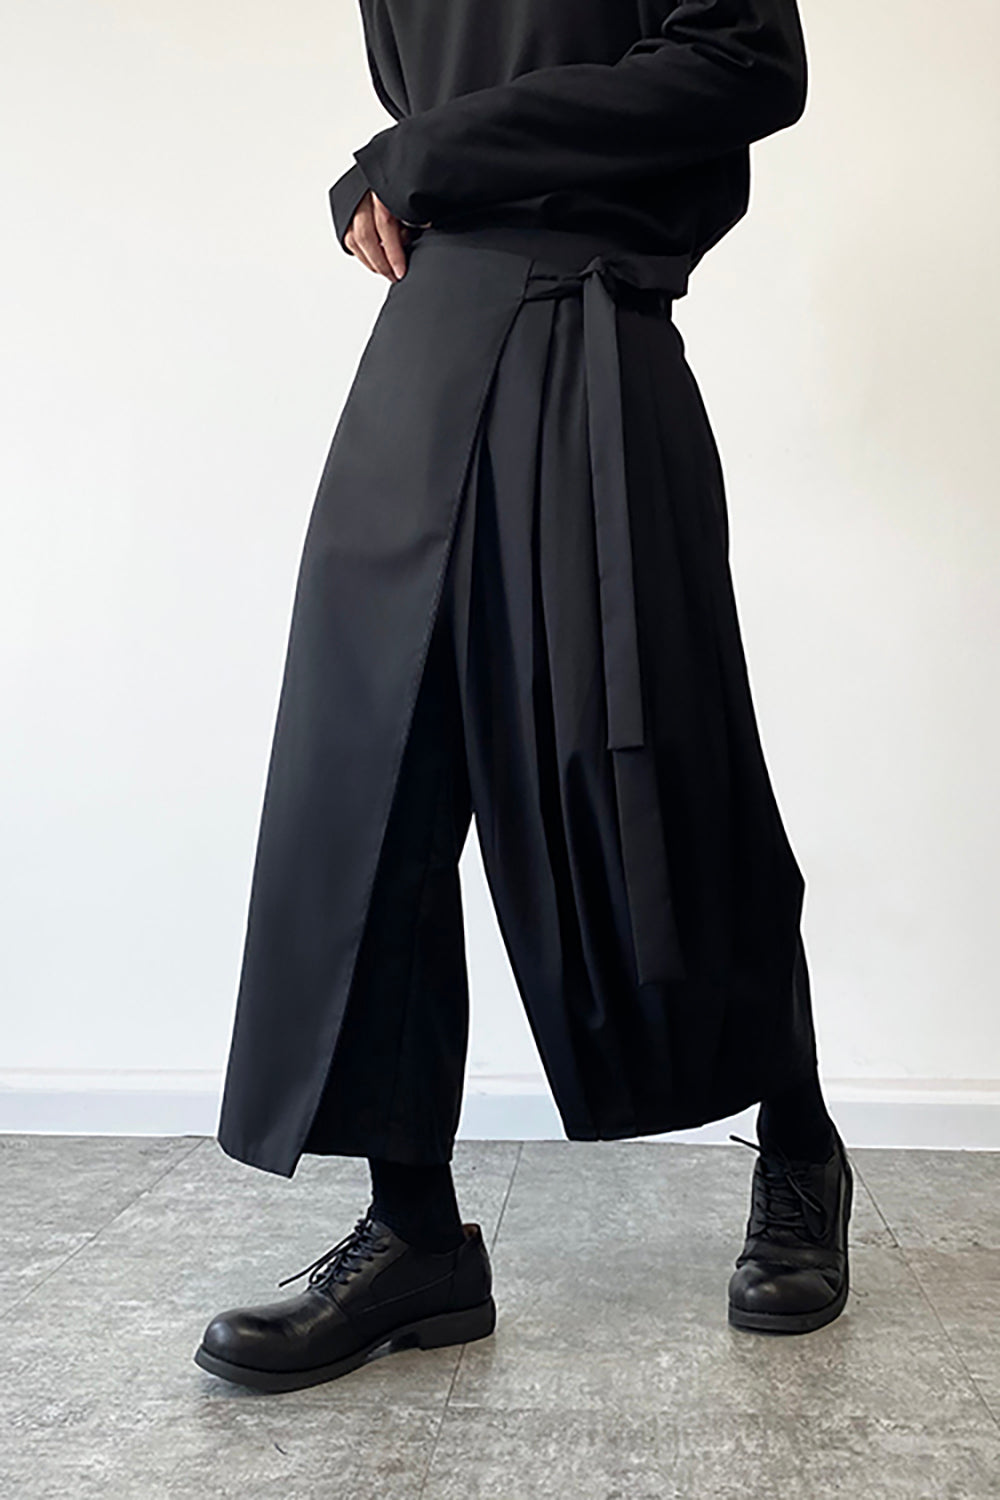 Yamamoto-style Layered Asymmetric Skirt-Pants – Dumy Mun